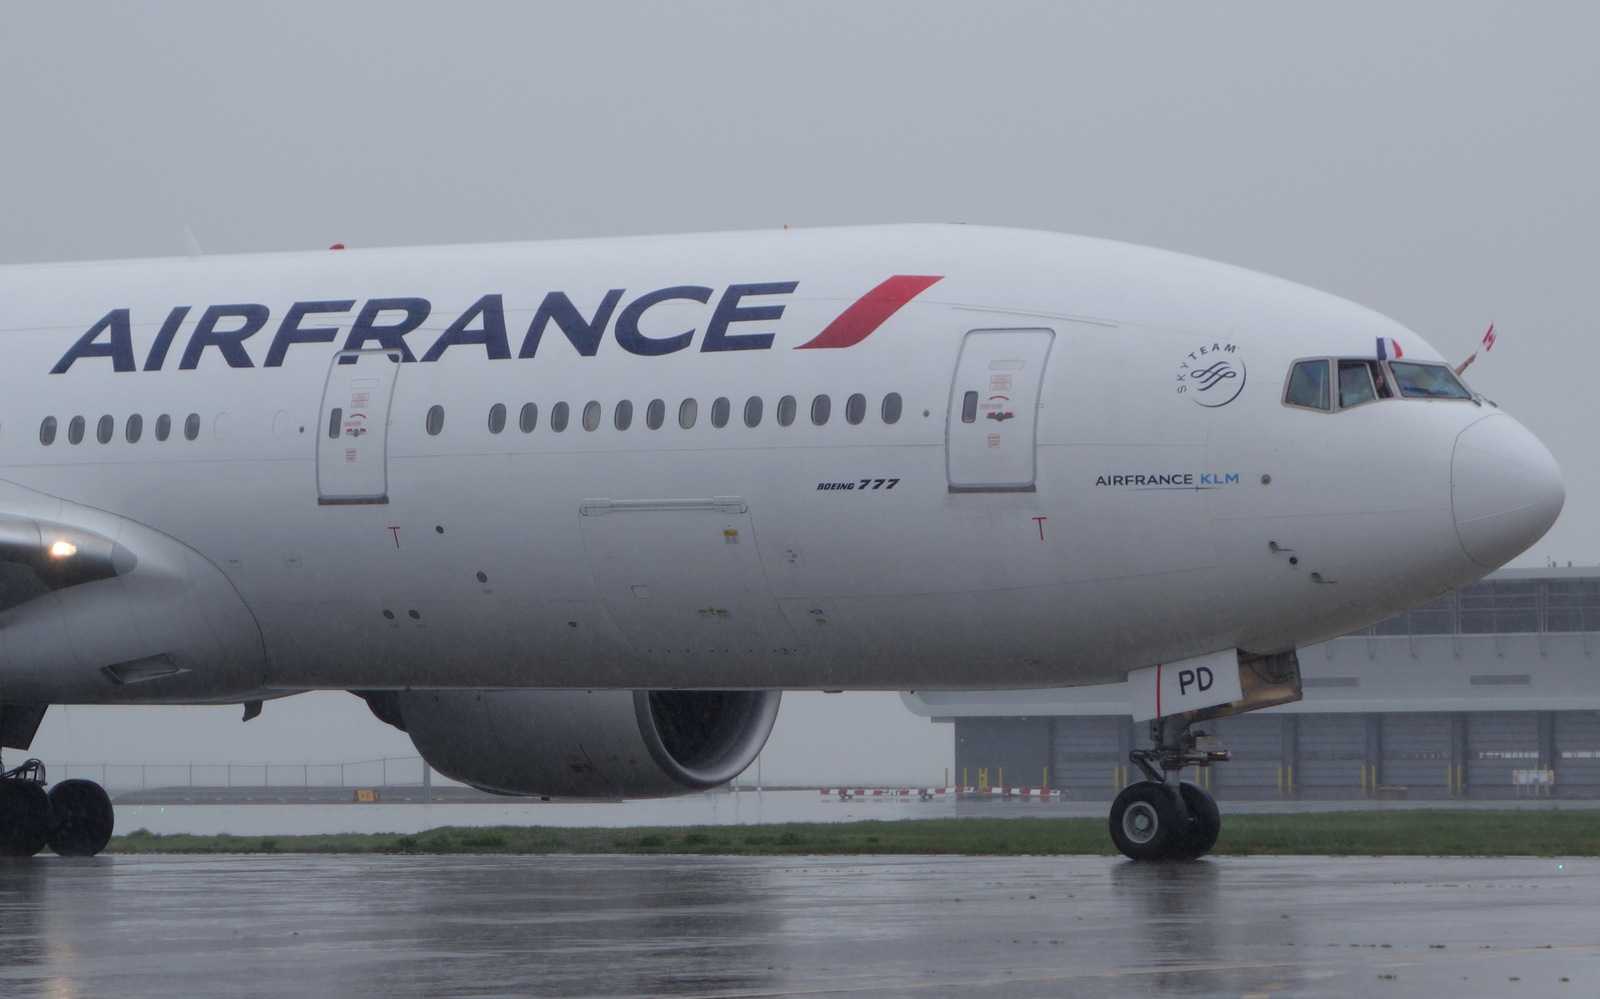 REVIEW: Air France B777-200ER business class review - C'est